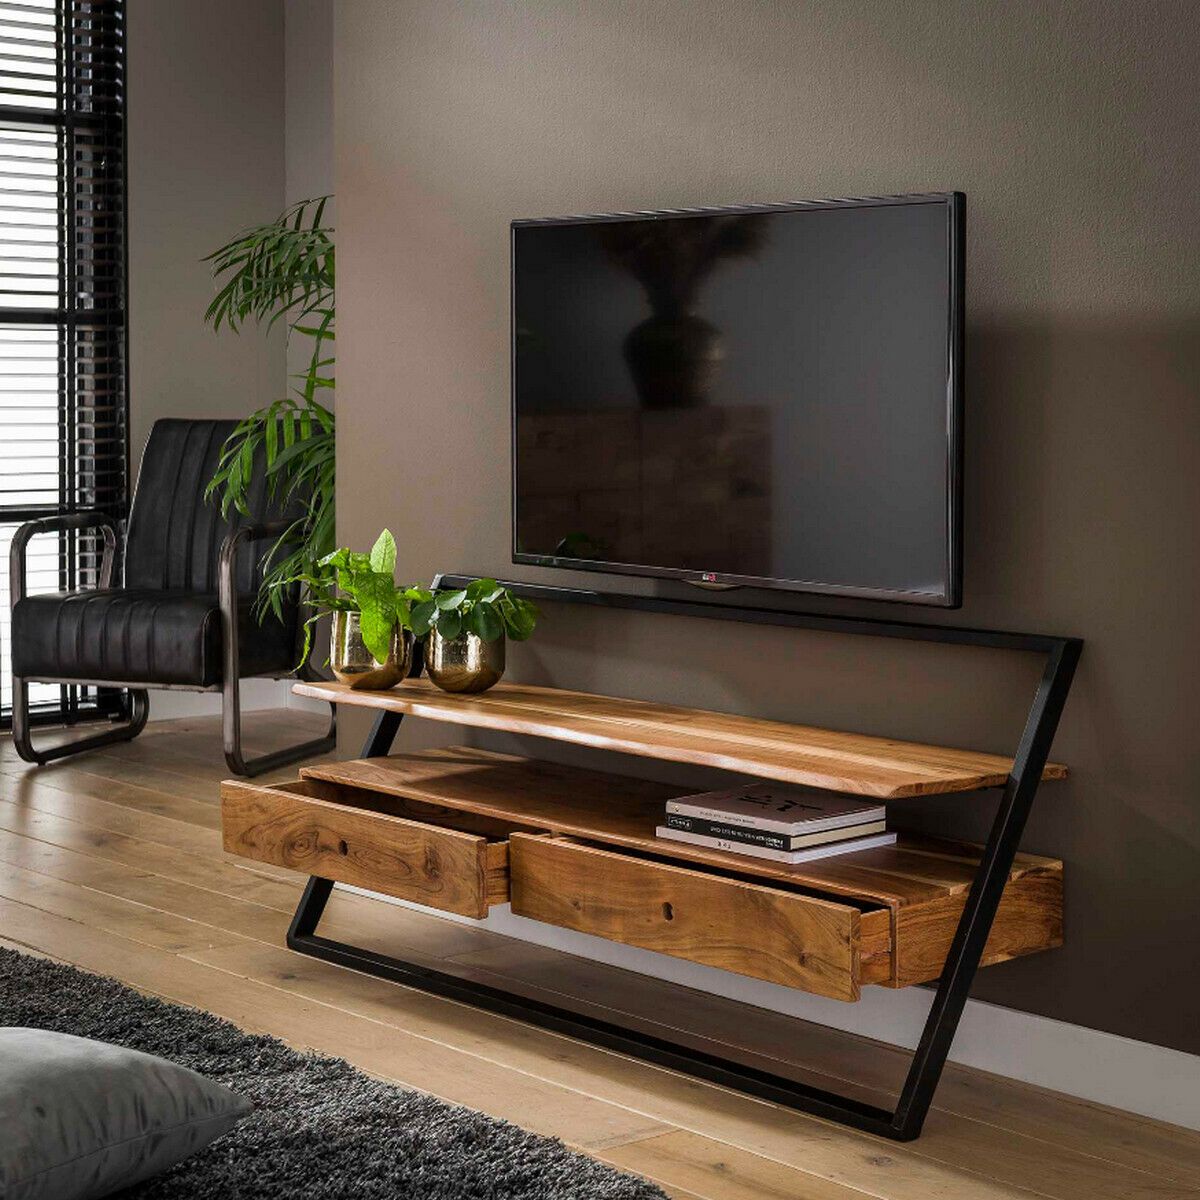 drempel Verwant Fantasie Leona tv-meubel acaciahout 2L 140 cm van het woonmerk Fraaai